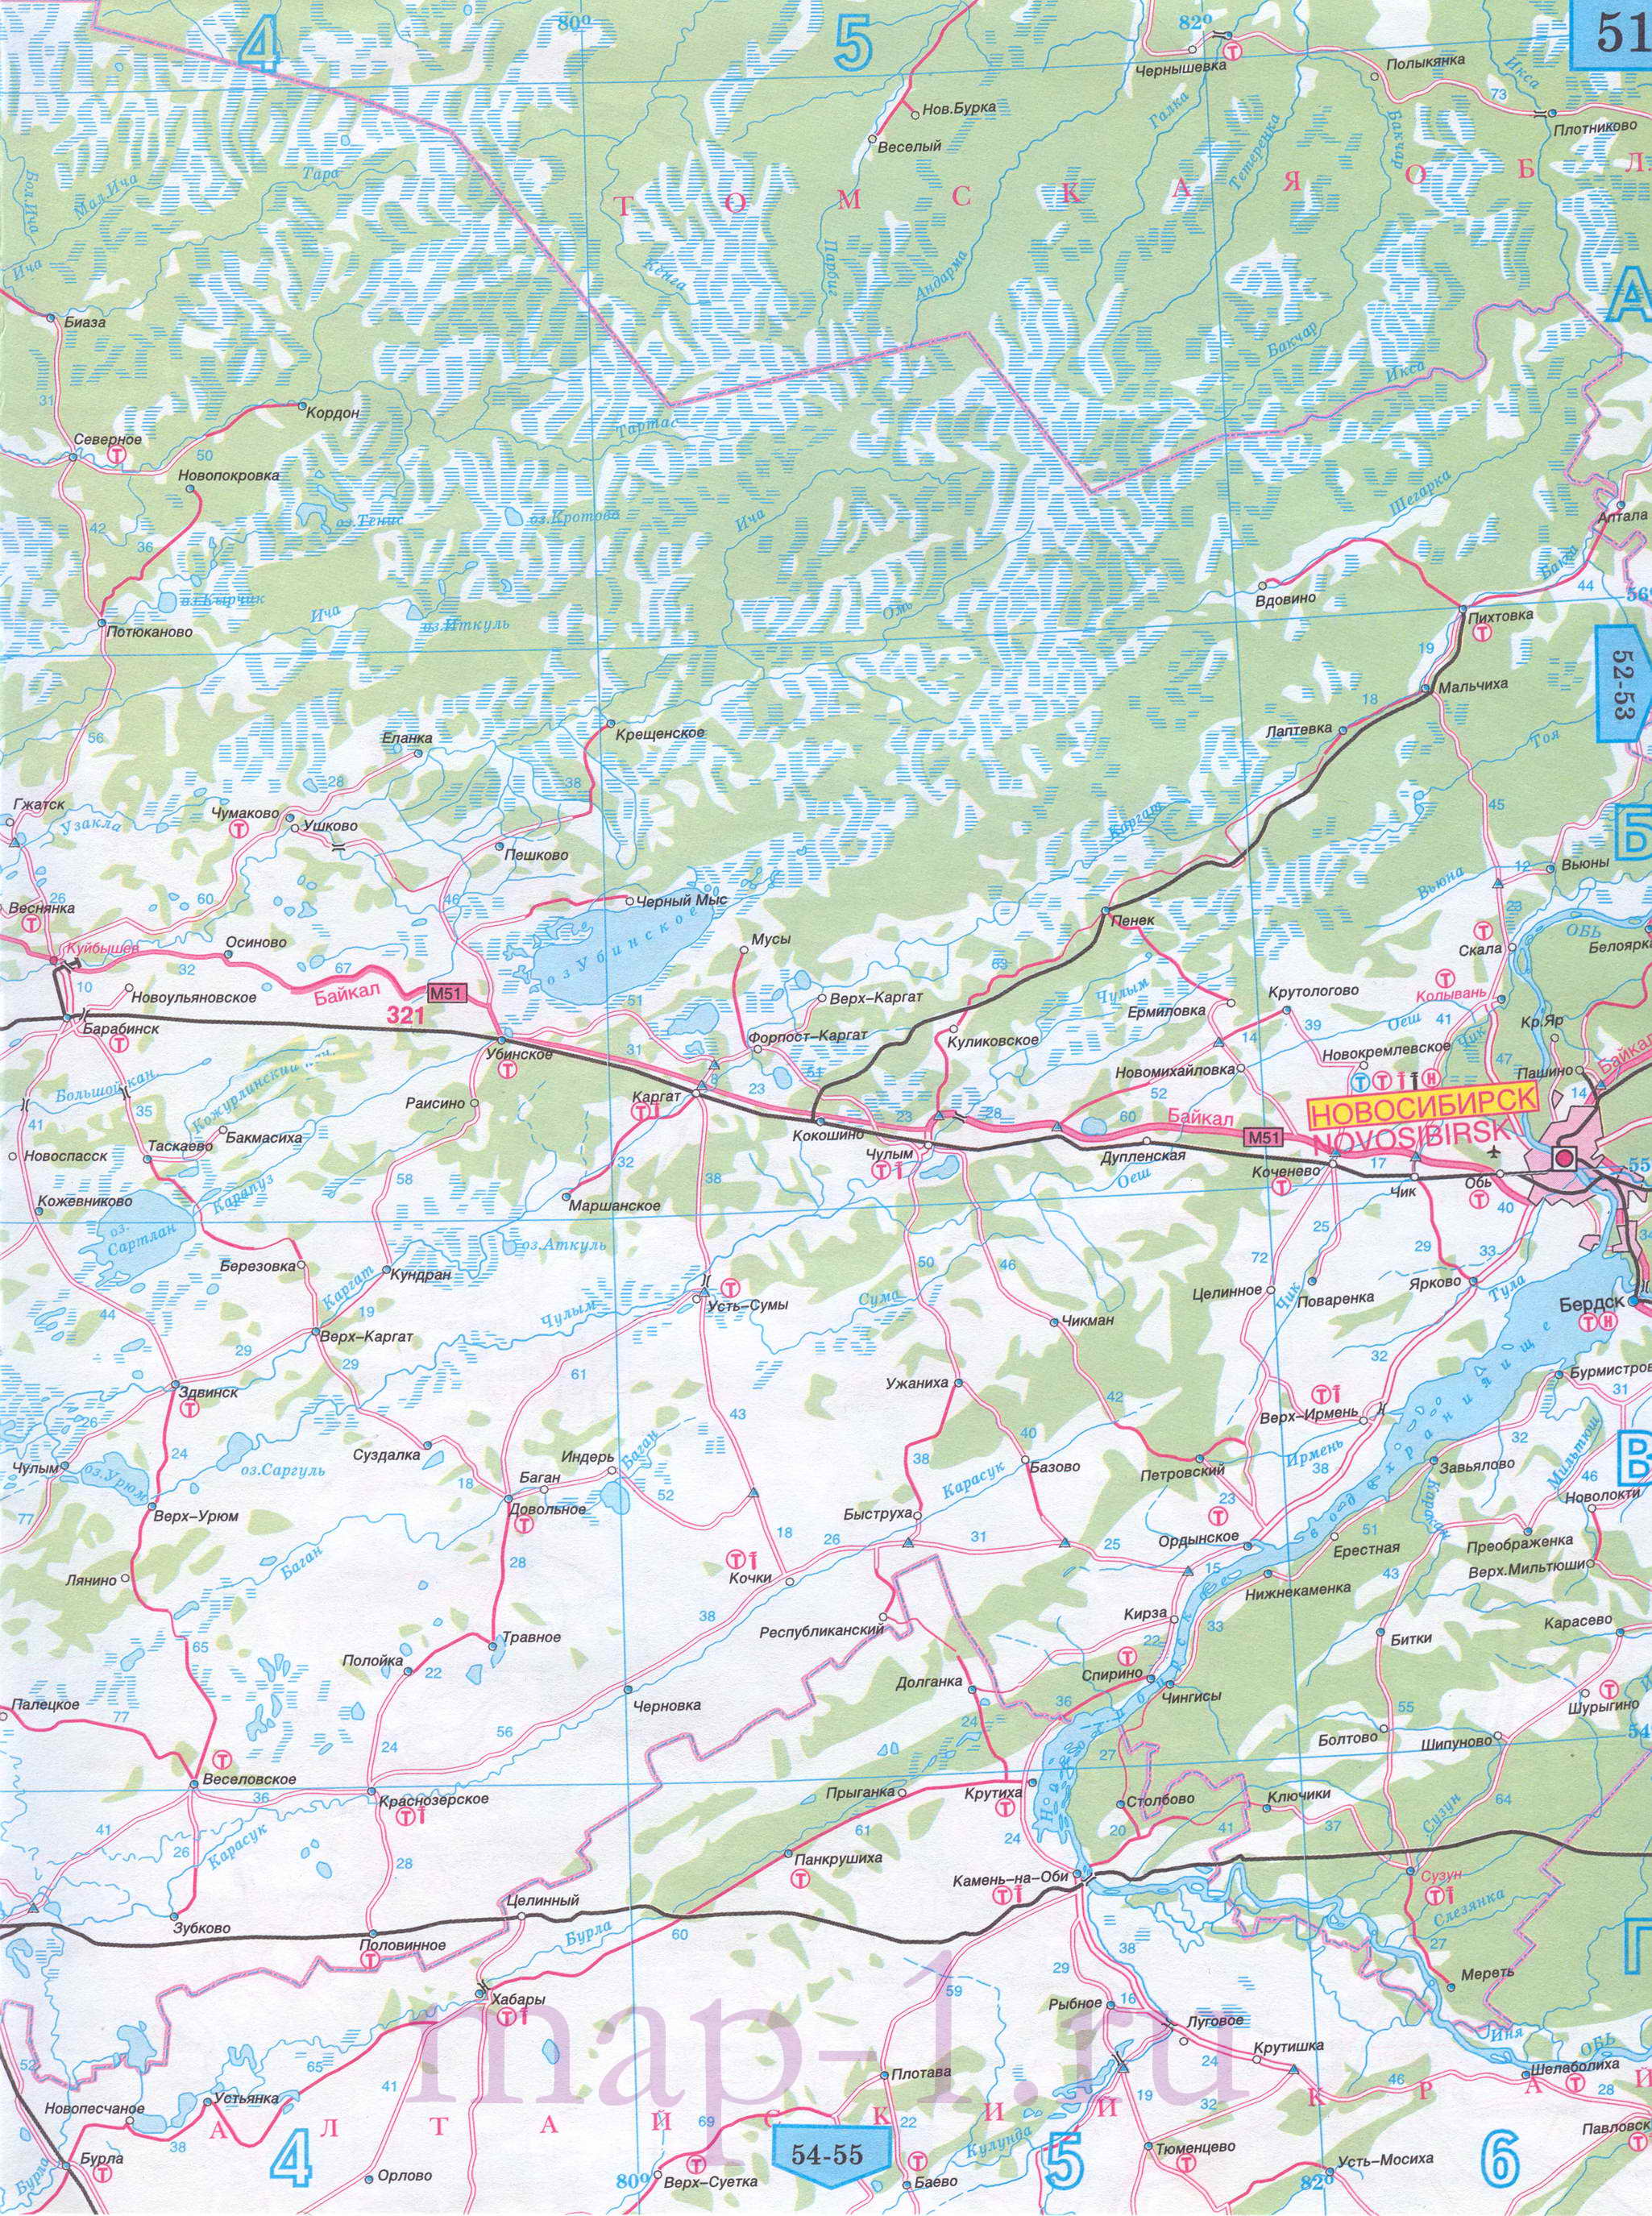 Карта Новосибирской области автомобильная. Подробная карта автомобильных дорог Новосибирской области, масштаб 1см:15км, B0 - 